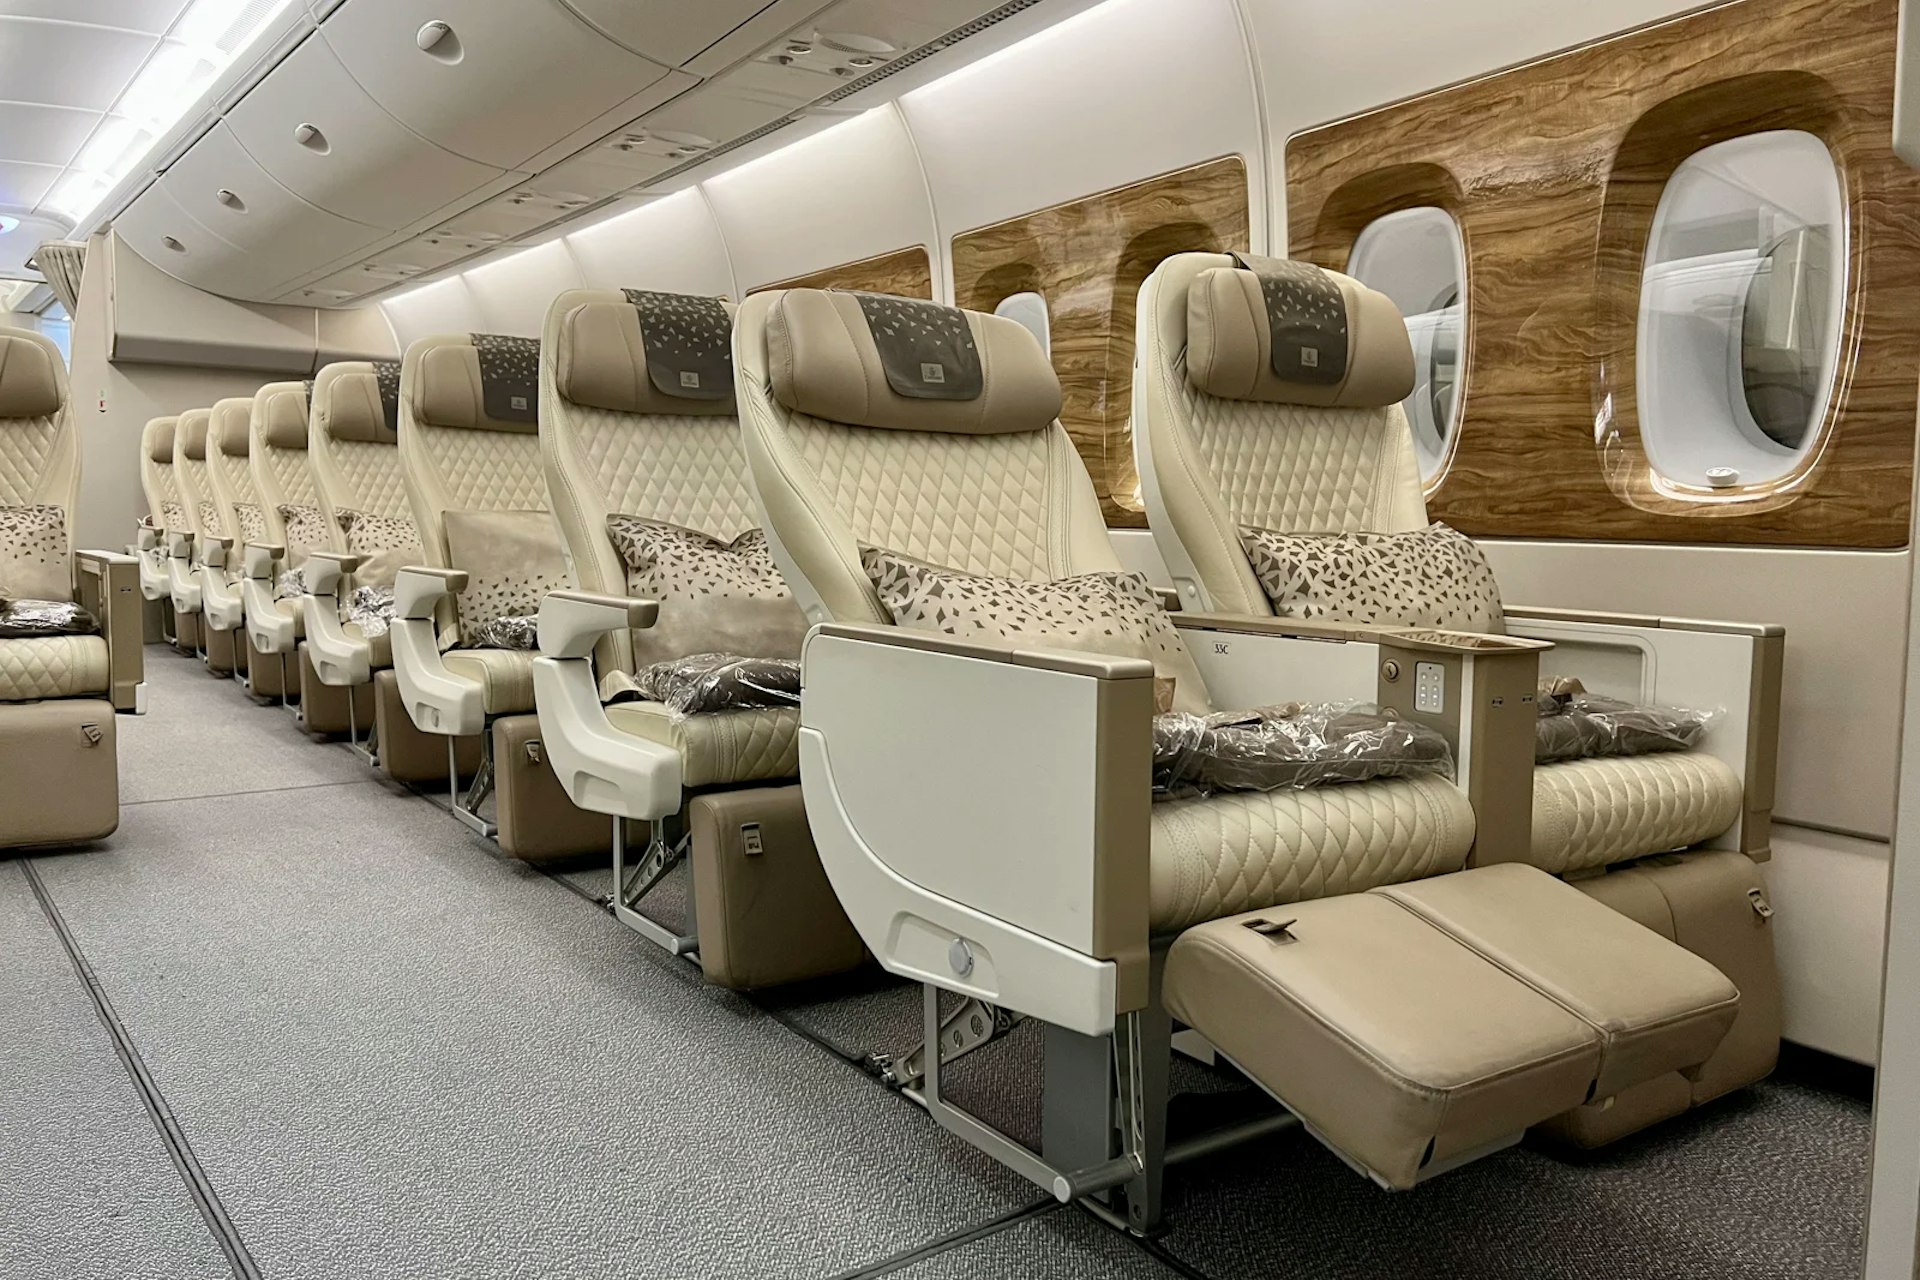 Emirates' new Premium Economy class